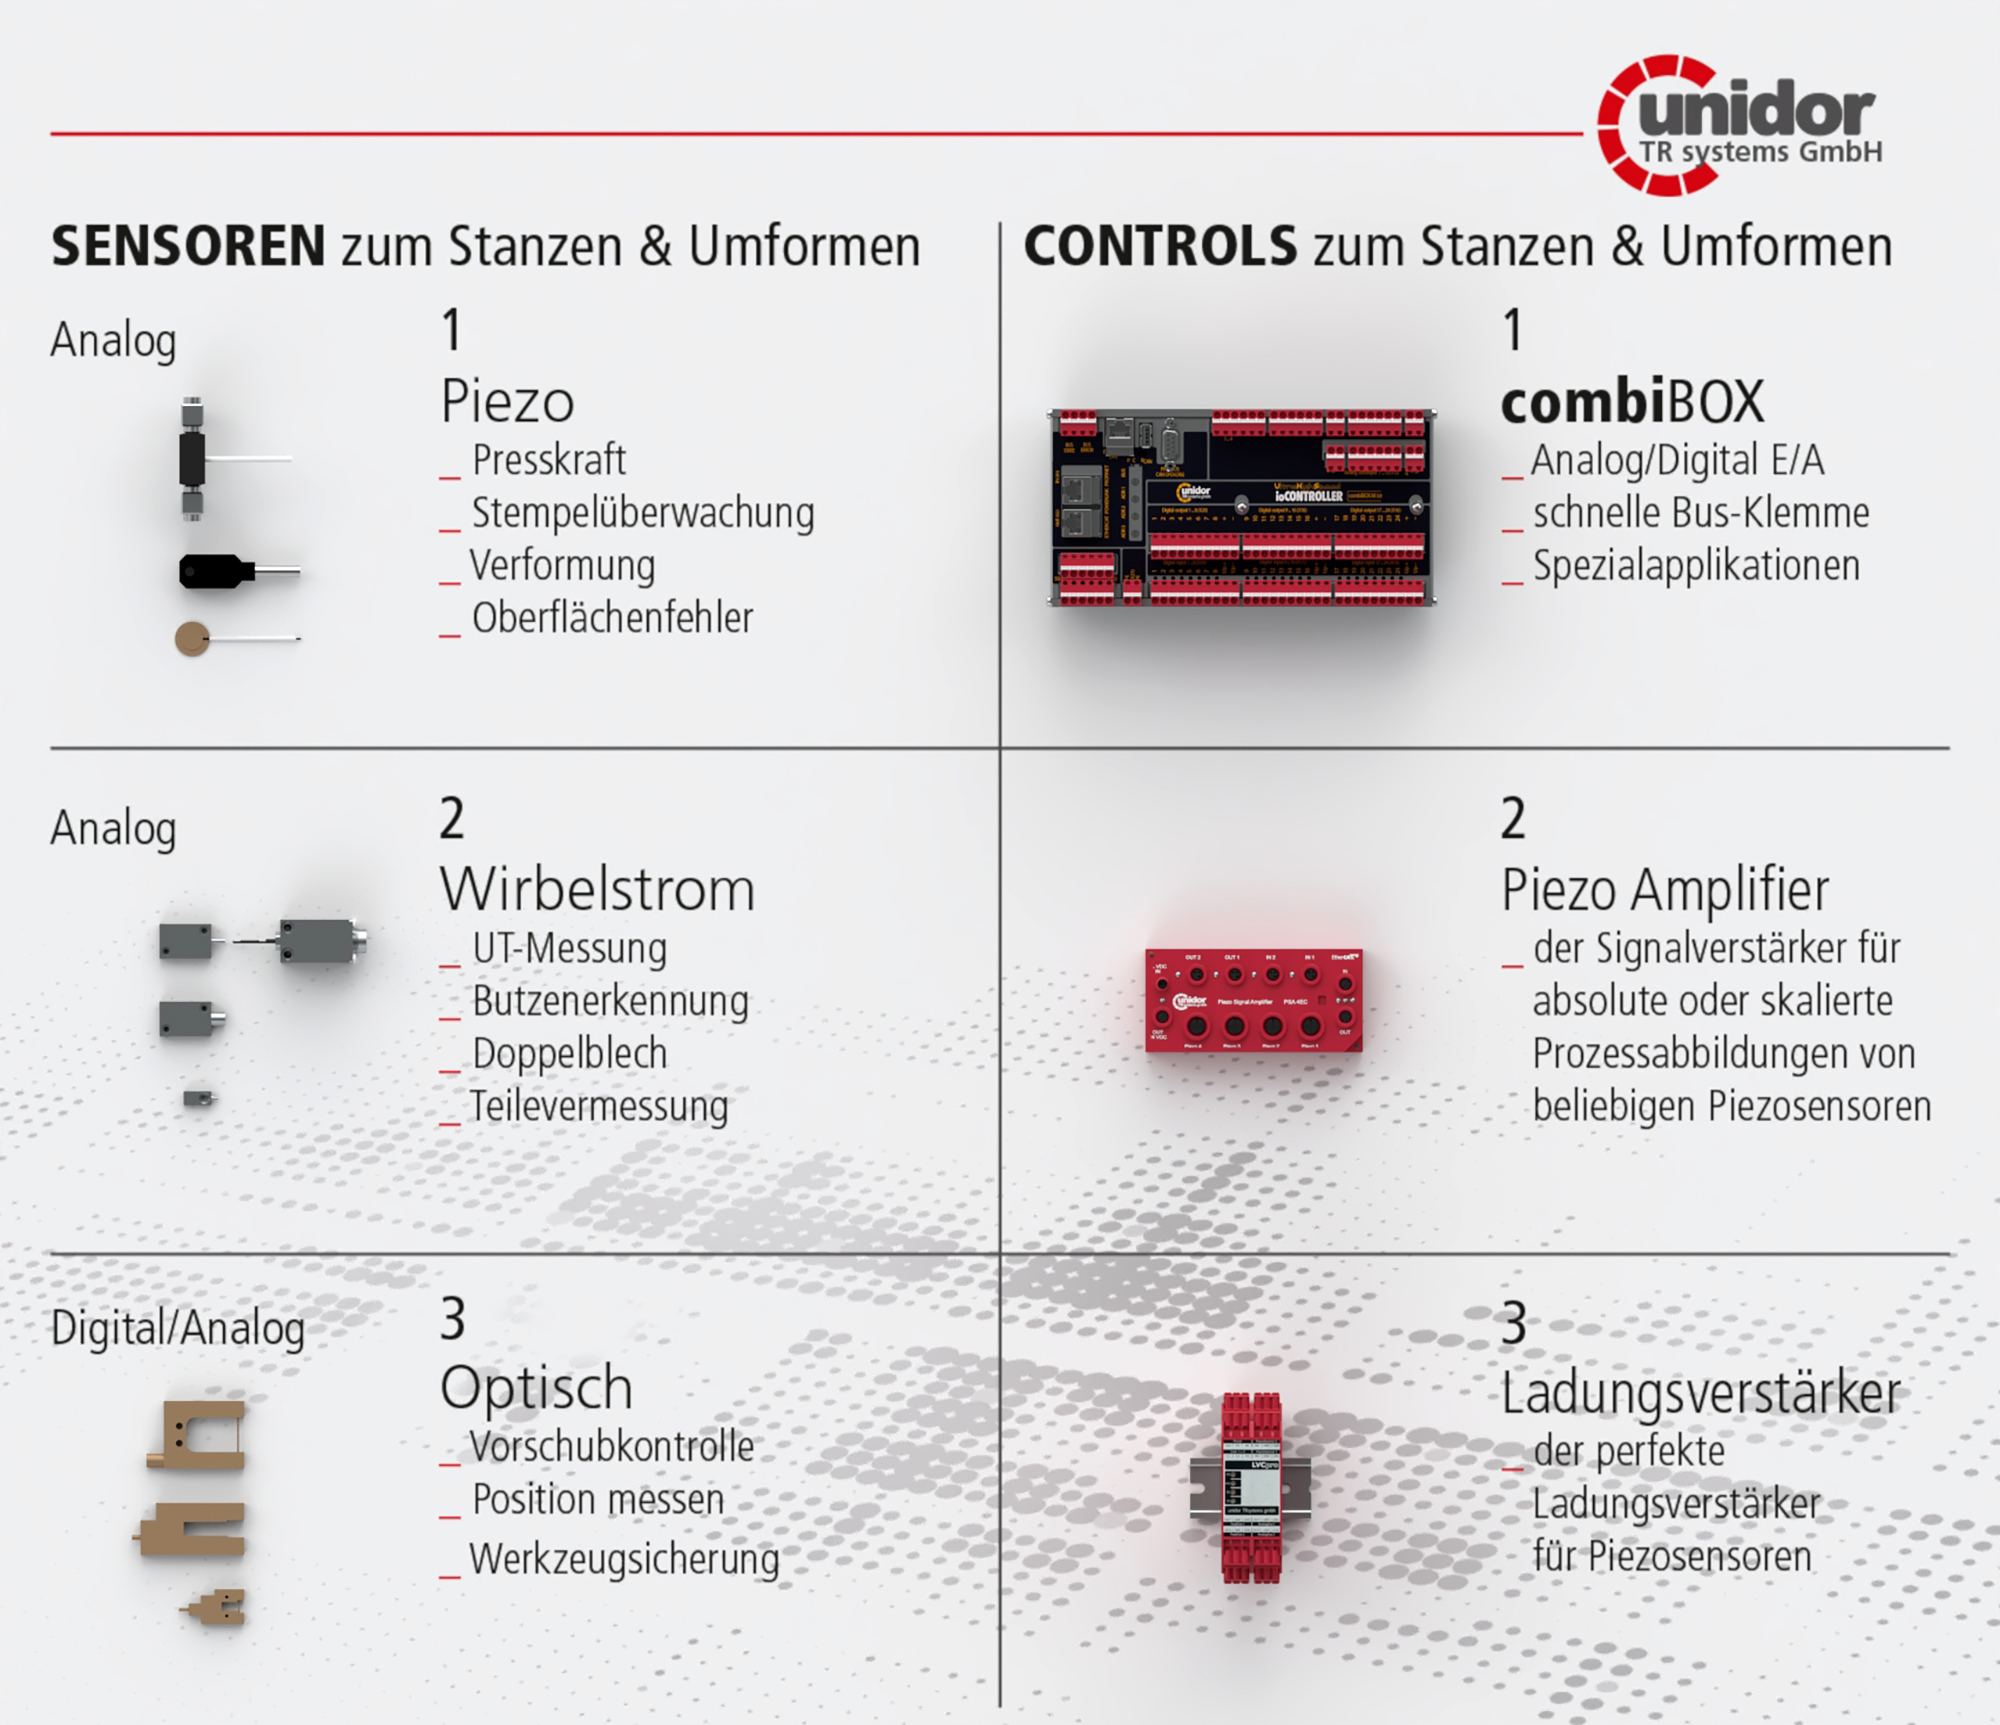  Unidor Sensors & Controls